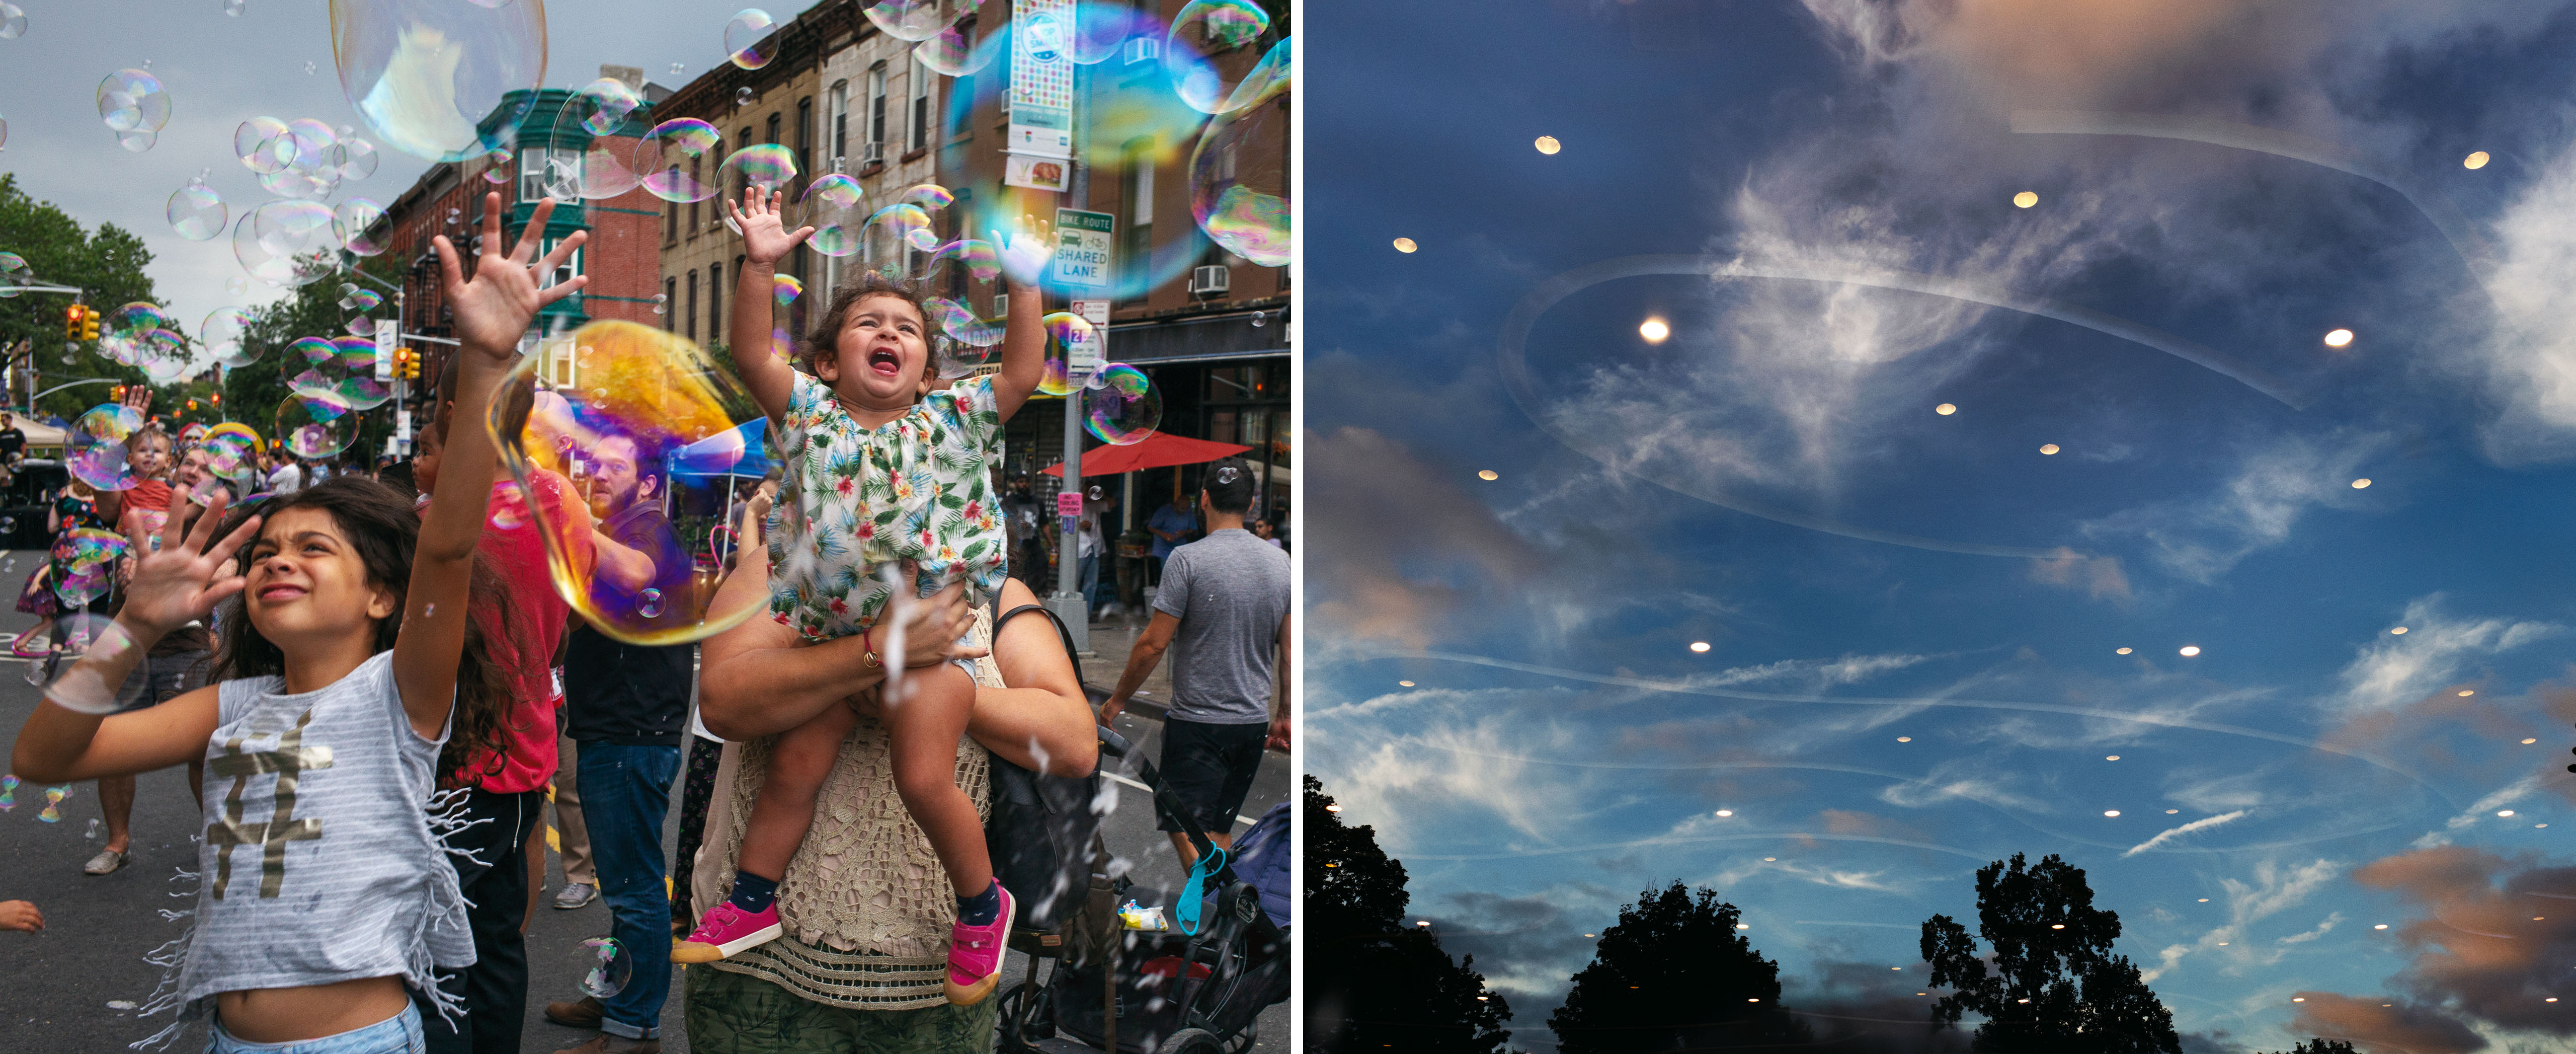 左图是大街上的Park Slope社区成员在玩泡泡。 右边是展望公园的夜空，下面反射着灯光。